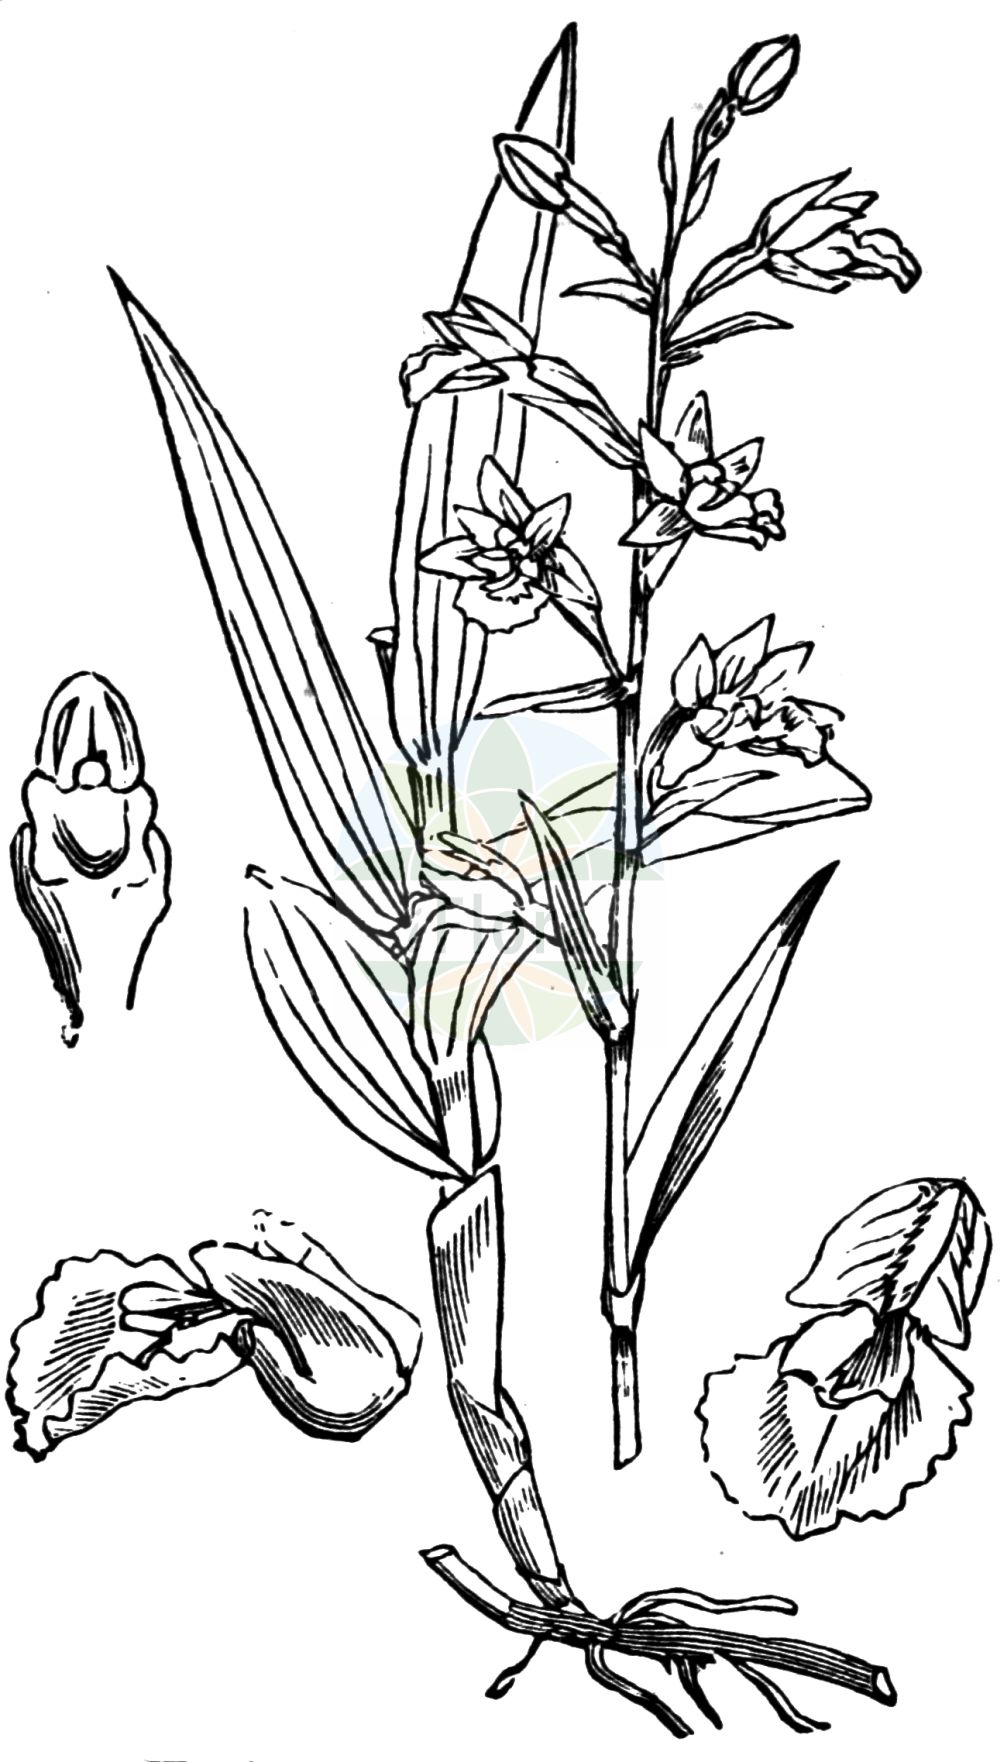 Historische Abbildung von Epipactis palustris (Sumpf-Stendelwurz - Marsh Helleborine). Das Bild zeigt Blatt, Bluete, Frucht und Same. ---- Historical Drawing of Epipactis palustris (Sumpf-Stendelwurz - Marsh Helleborine). The image is showing leaf, flower, fruit and seed.(Epipactis palustris,Sumpf-Stendelwurz,Marsh Helleborine,Amesia palustris,Arthrochilium palustre,Calliphyllon palustre,Cymbidium palustre,Epipactis longifolia,Epipactis palustris,Epipactis salina,Helleborine longifolia,Helleborine palustris,Limodorum palustre,Serapias longiflora,Serapias palustris,Sumpf-Stendelwurz,Sumpf-Staendelwurz,Marsh Helleborine,Epipactis,Stendelwurz,Helleborine,Orchidaceae,Knabenkrautgewächse,Orchid family,Blatt,Bluete,Frucht,Same,leaf,flower,fruit,seed,Fitch et al. (1880))